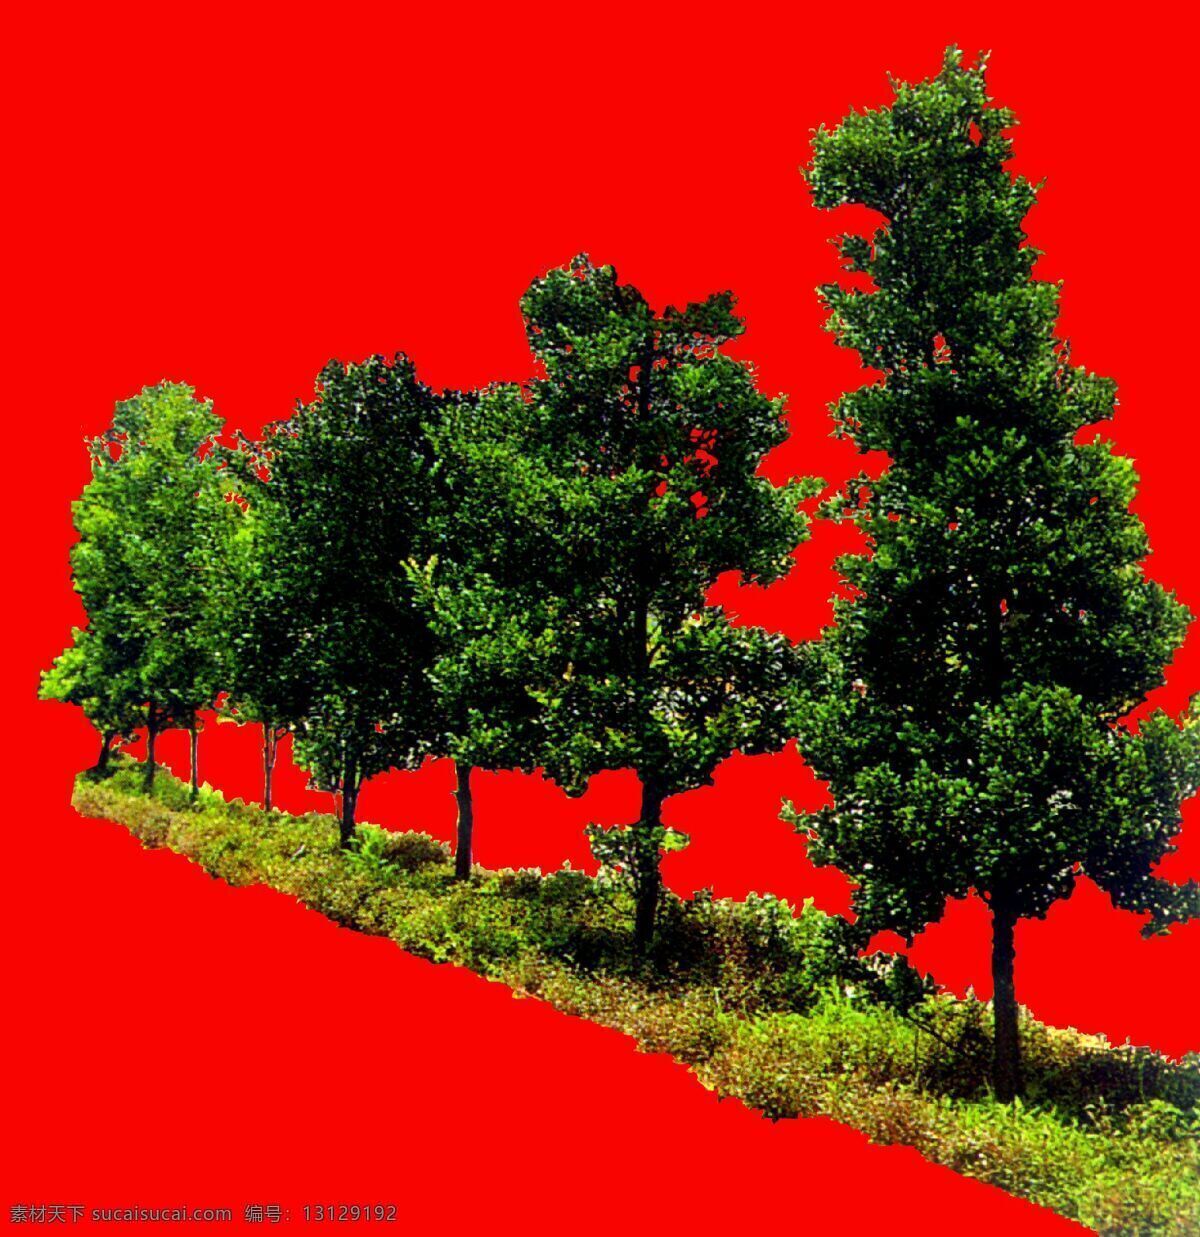 树丛 贴图素材 建筑装饰 设计素材 植物 红色